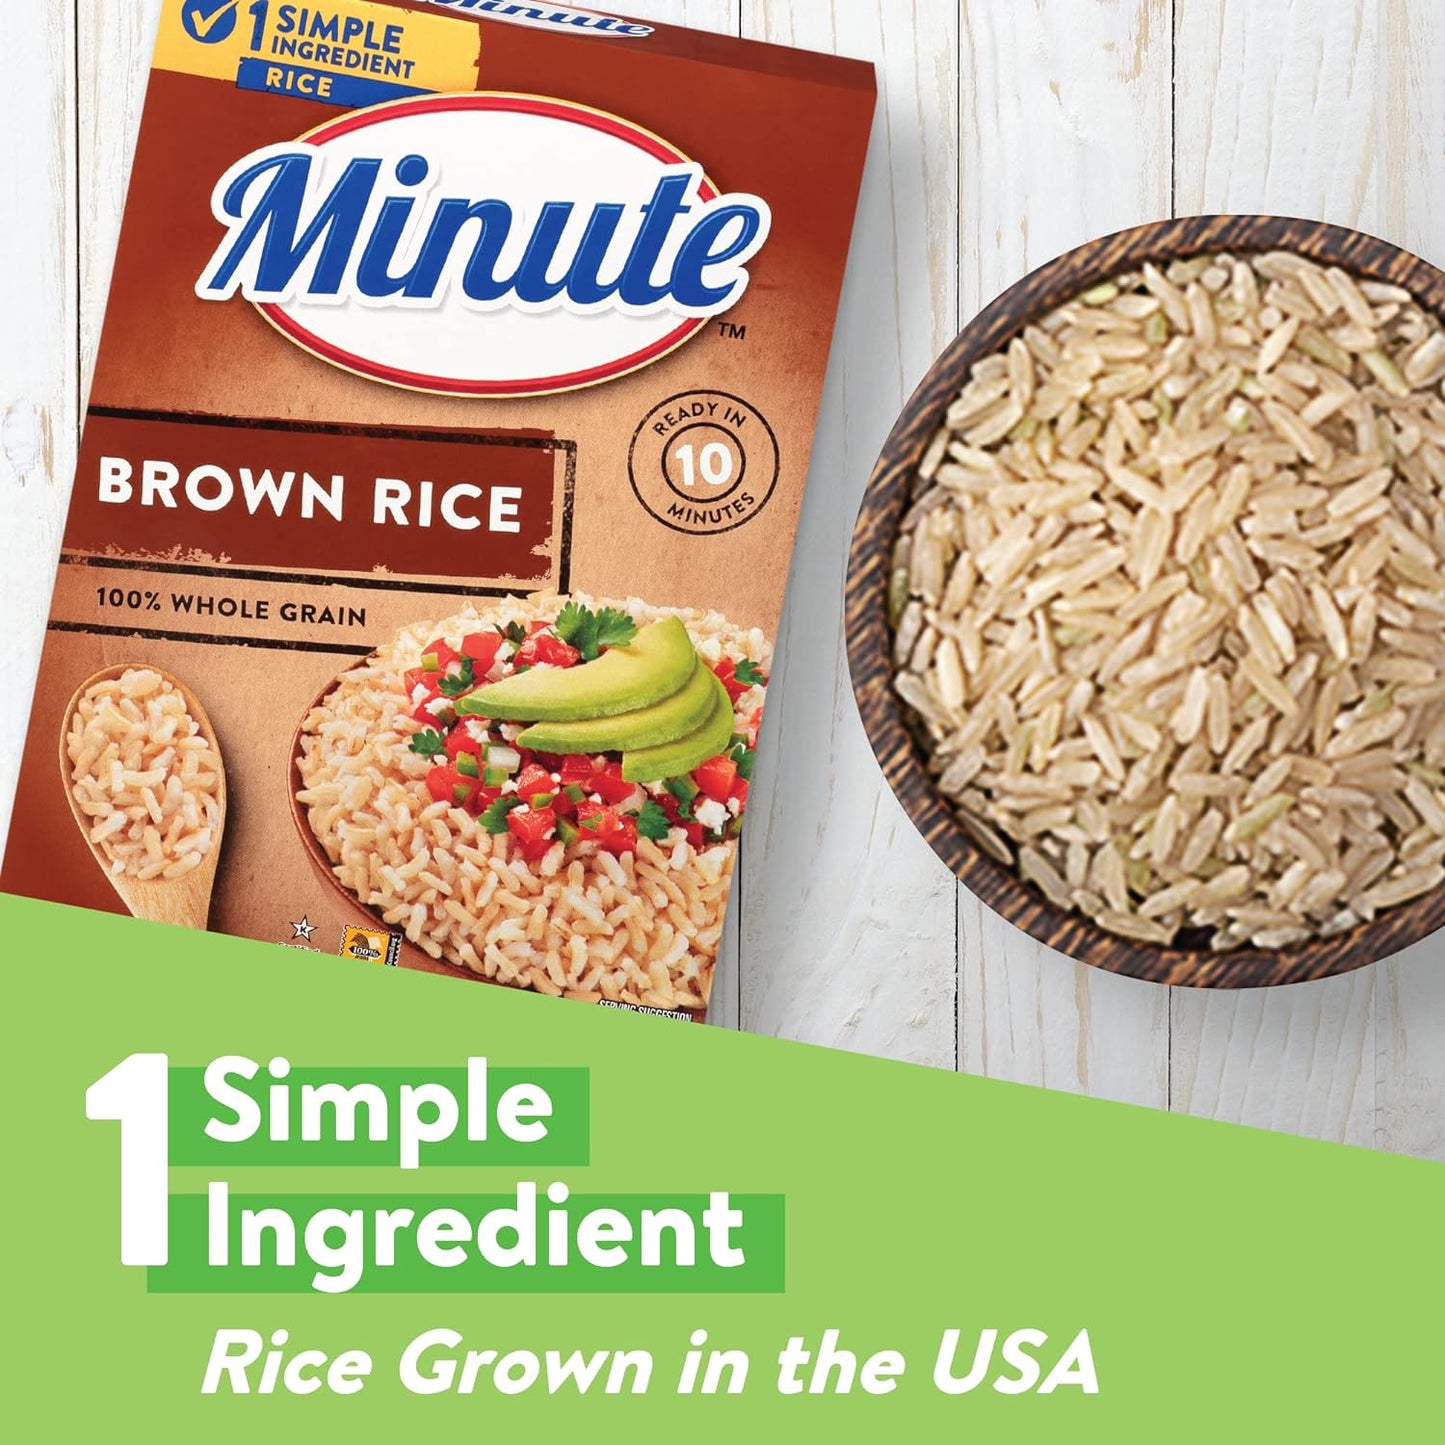 Minute Instant Brown Rice, Whole Grain, Gluten Free, Non-GMO, 14 Ounce Box